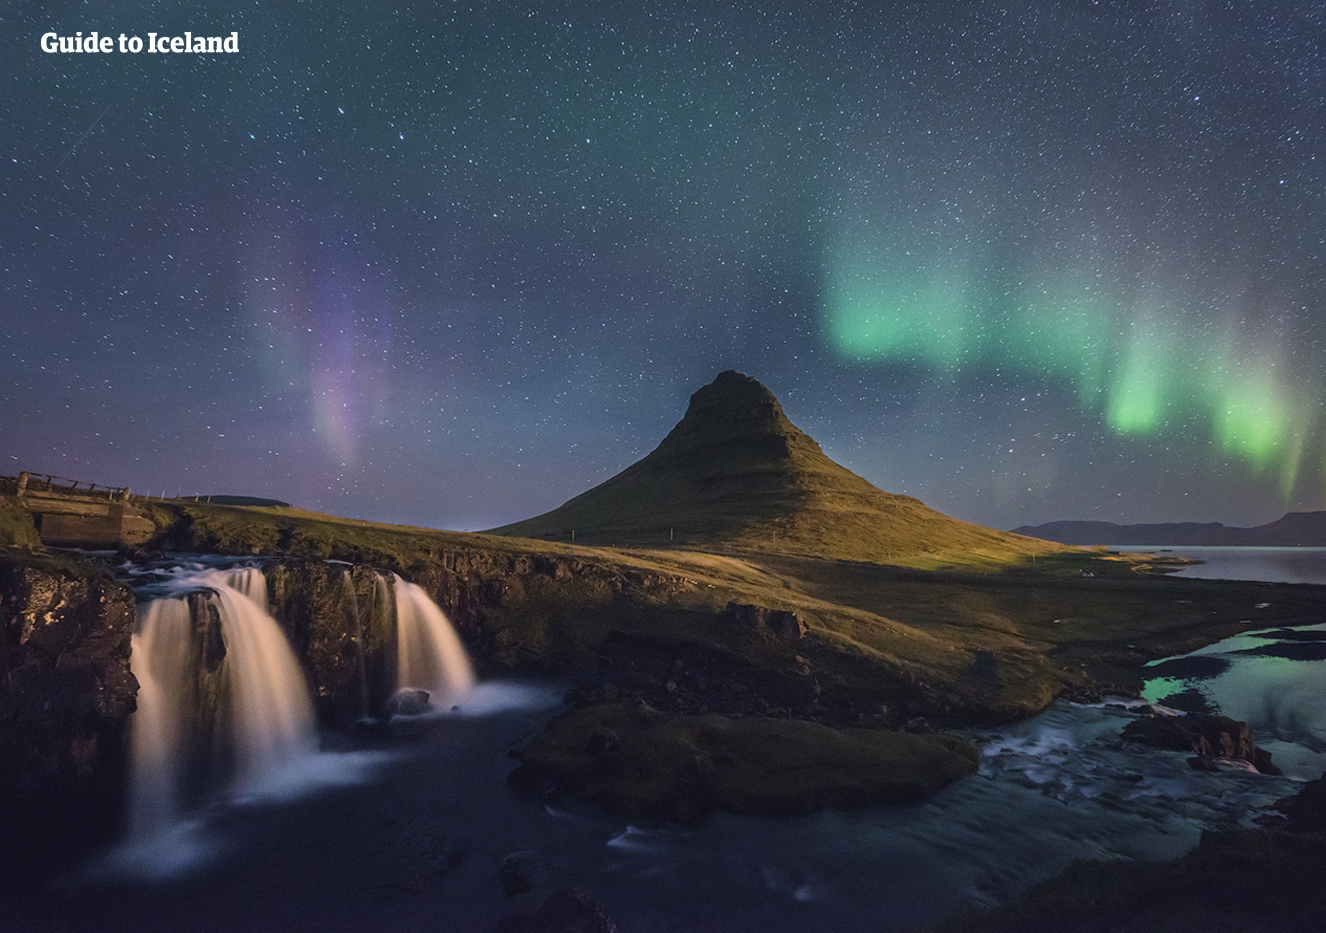 Les fabuleuses aurores boréales dansent dans le ciel, derrière l'une des montagnes les plus photographiées du pays, le mont Kirkjufell, sur la péninsule de Snæfellsnes.